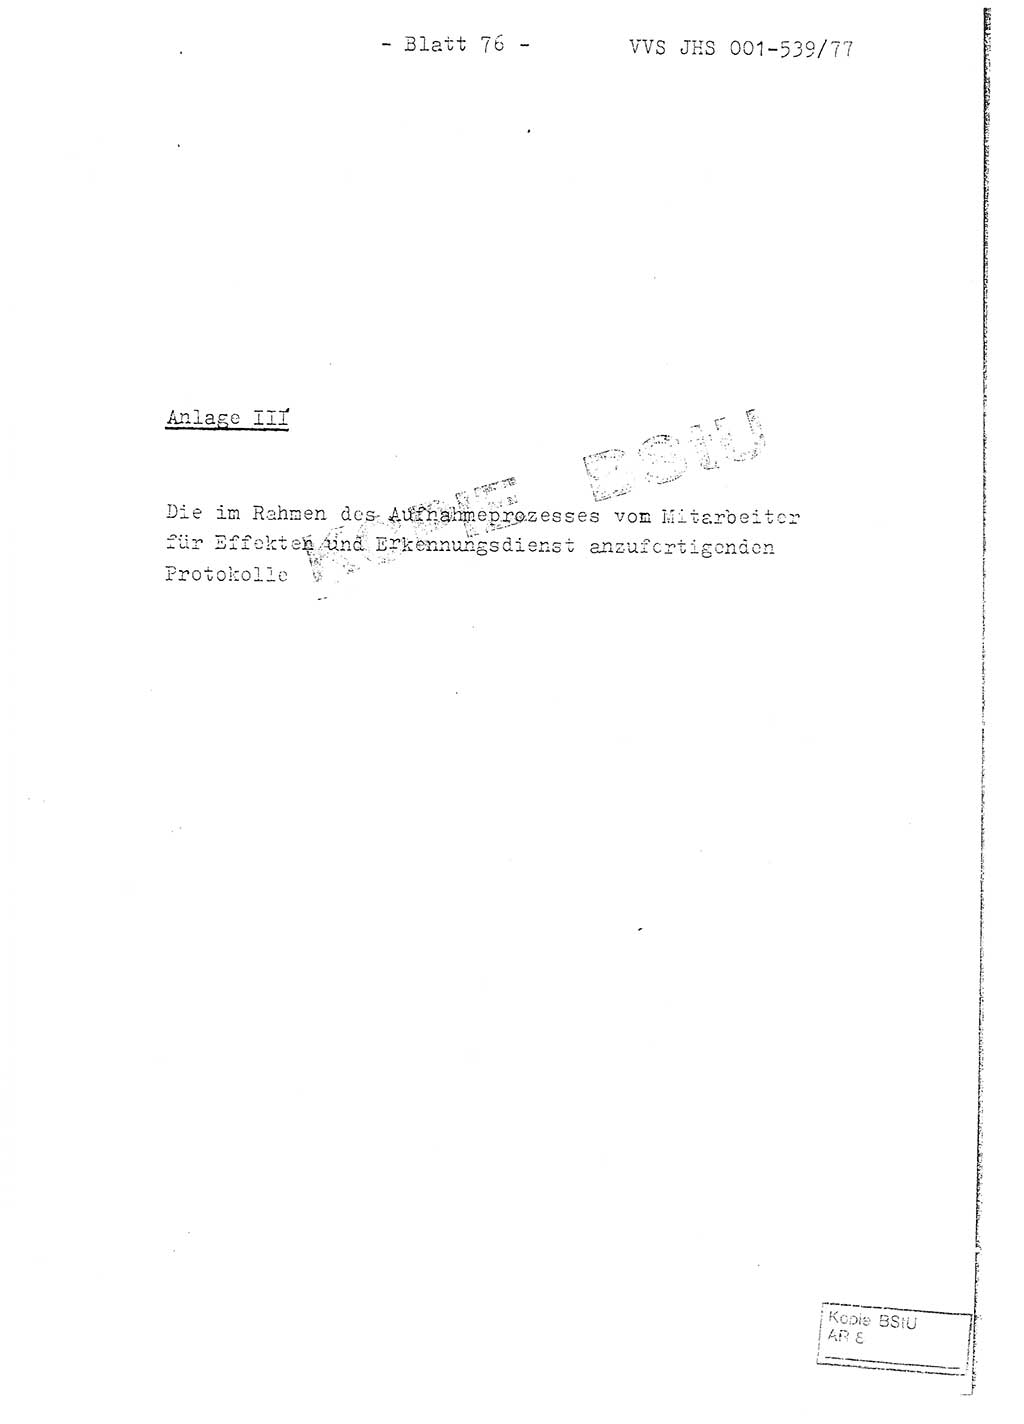 Fachschulabschlußarbeit Hauptmann Dietrich Jung (Abt. ⅩⅣ), Leutnant Klaus Klötzner (Abt. ⅩⅣ), Ministerium für Staatssicherheit (MfS) [Deutsche Demokratische Republik (DDR)], Juristische Hochschule (JHS), Vertrauliche Verschlußsache (VVS) 001-539/77, Potsdam 1978, Seite 76 (FS-Abschl.-Arb. MfS DDR JHS VVS 001-539/77 1978, S. 76)